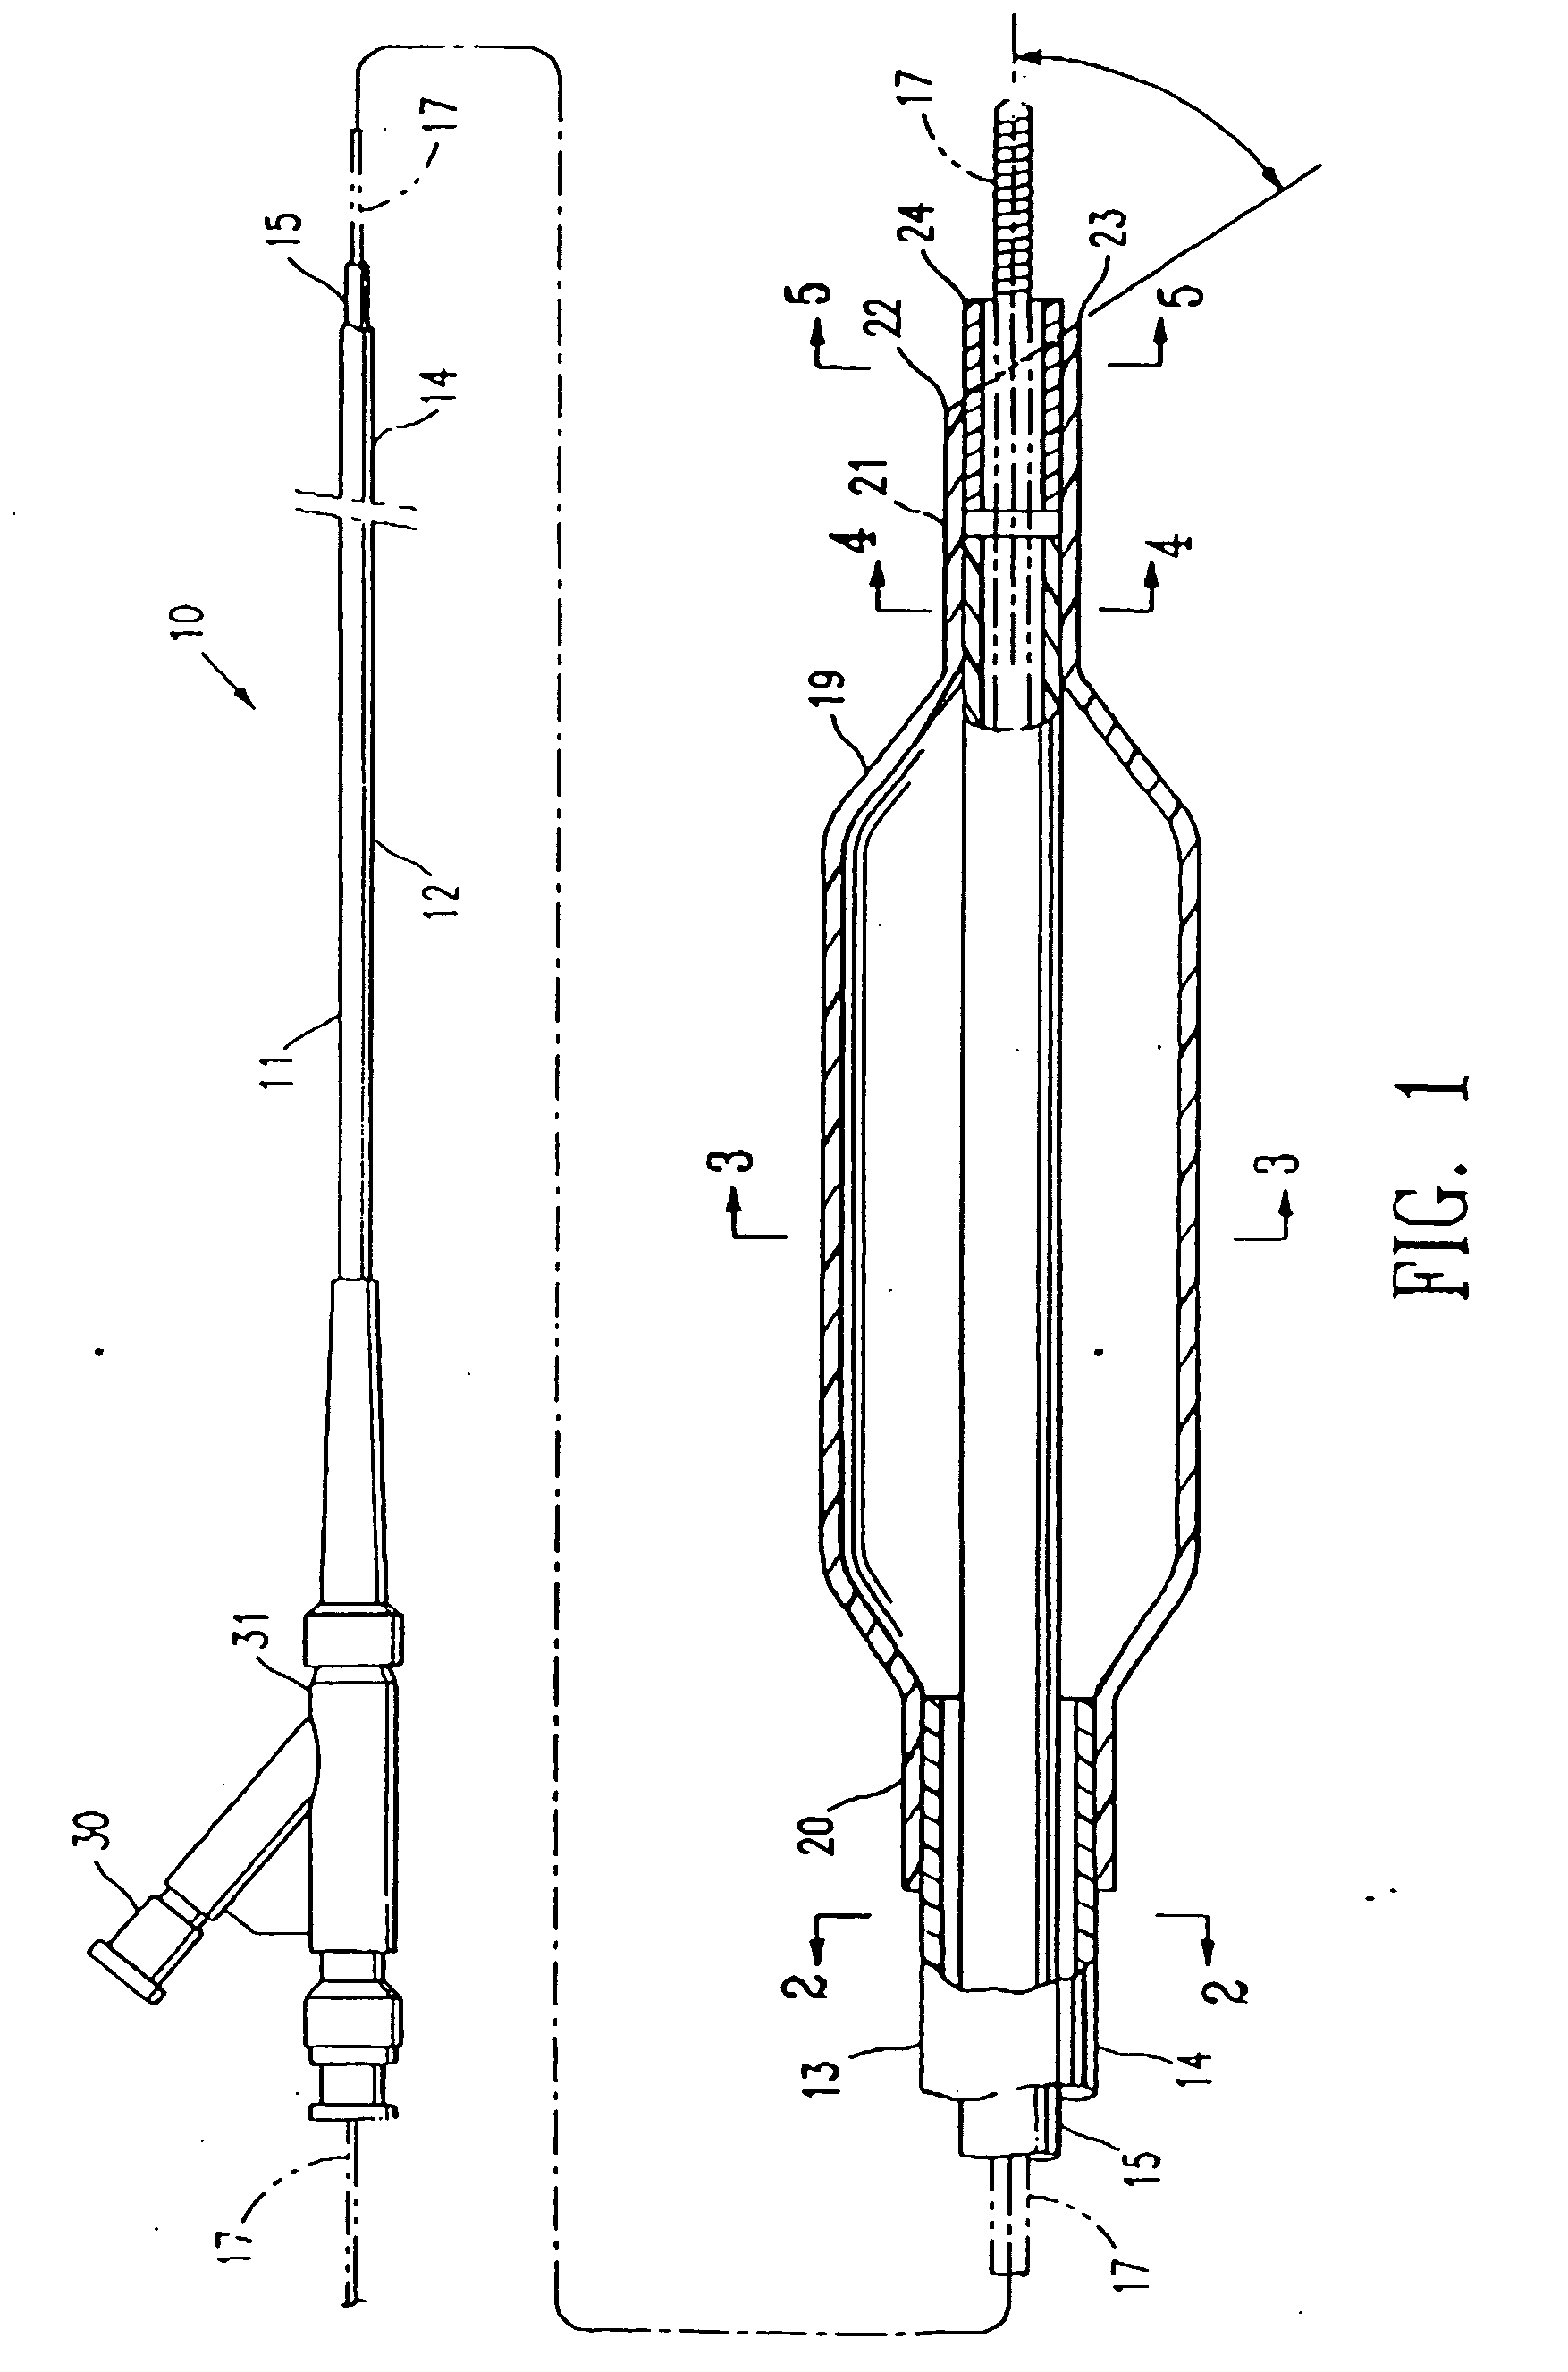 Balloon catheter having a flexible distal end